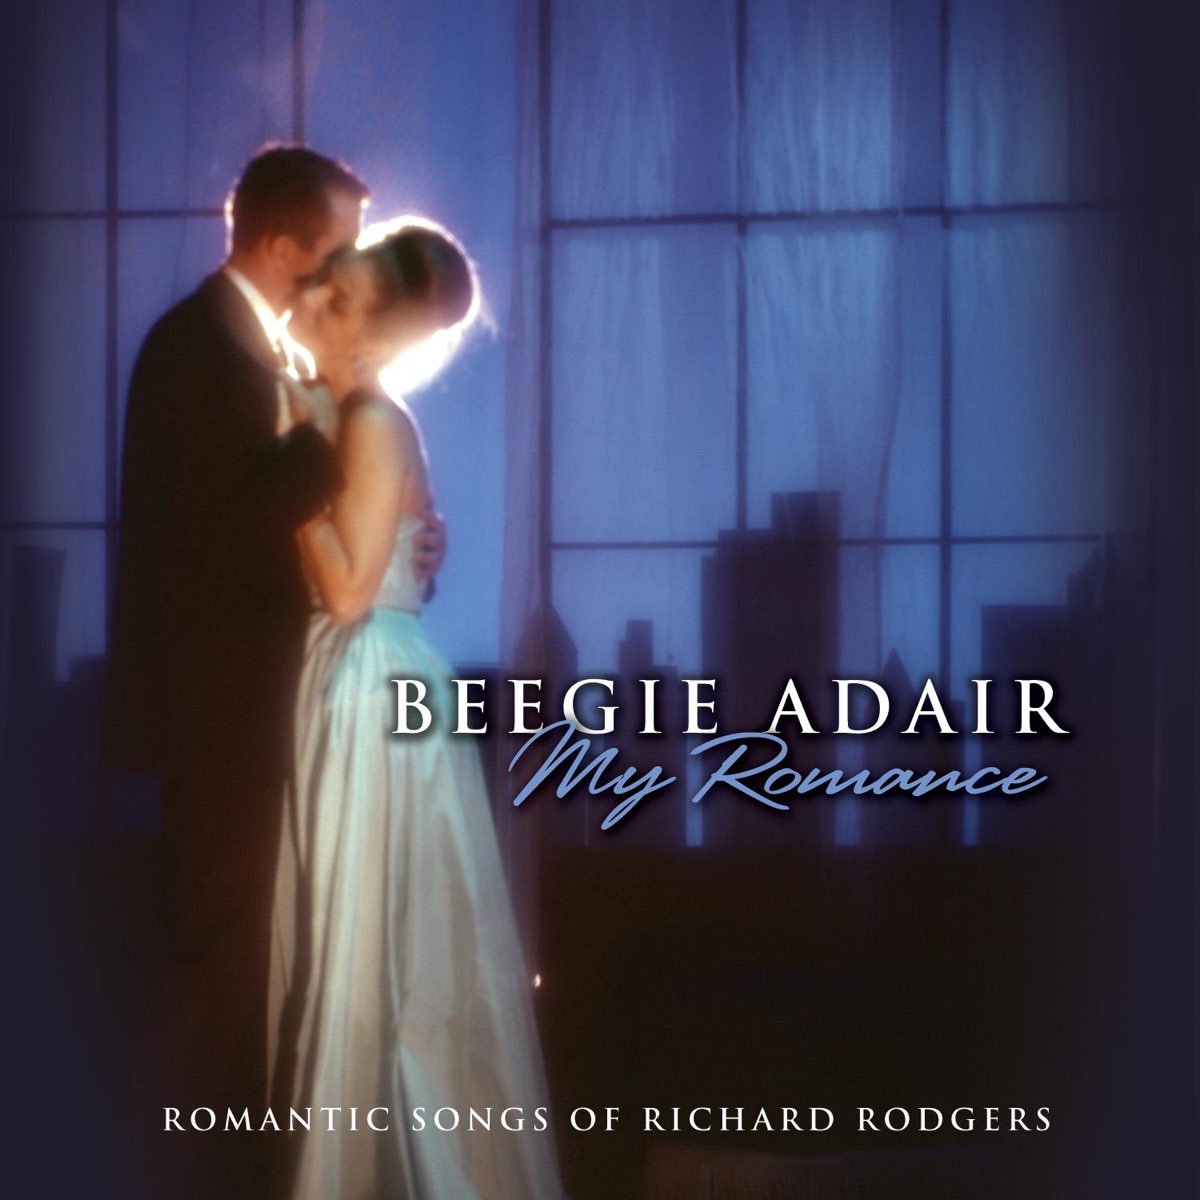 Beegie Adair. Beegie Adair фото. Beegie Adair - my Piano Romance. Beegie Adair - my Romance.